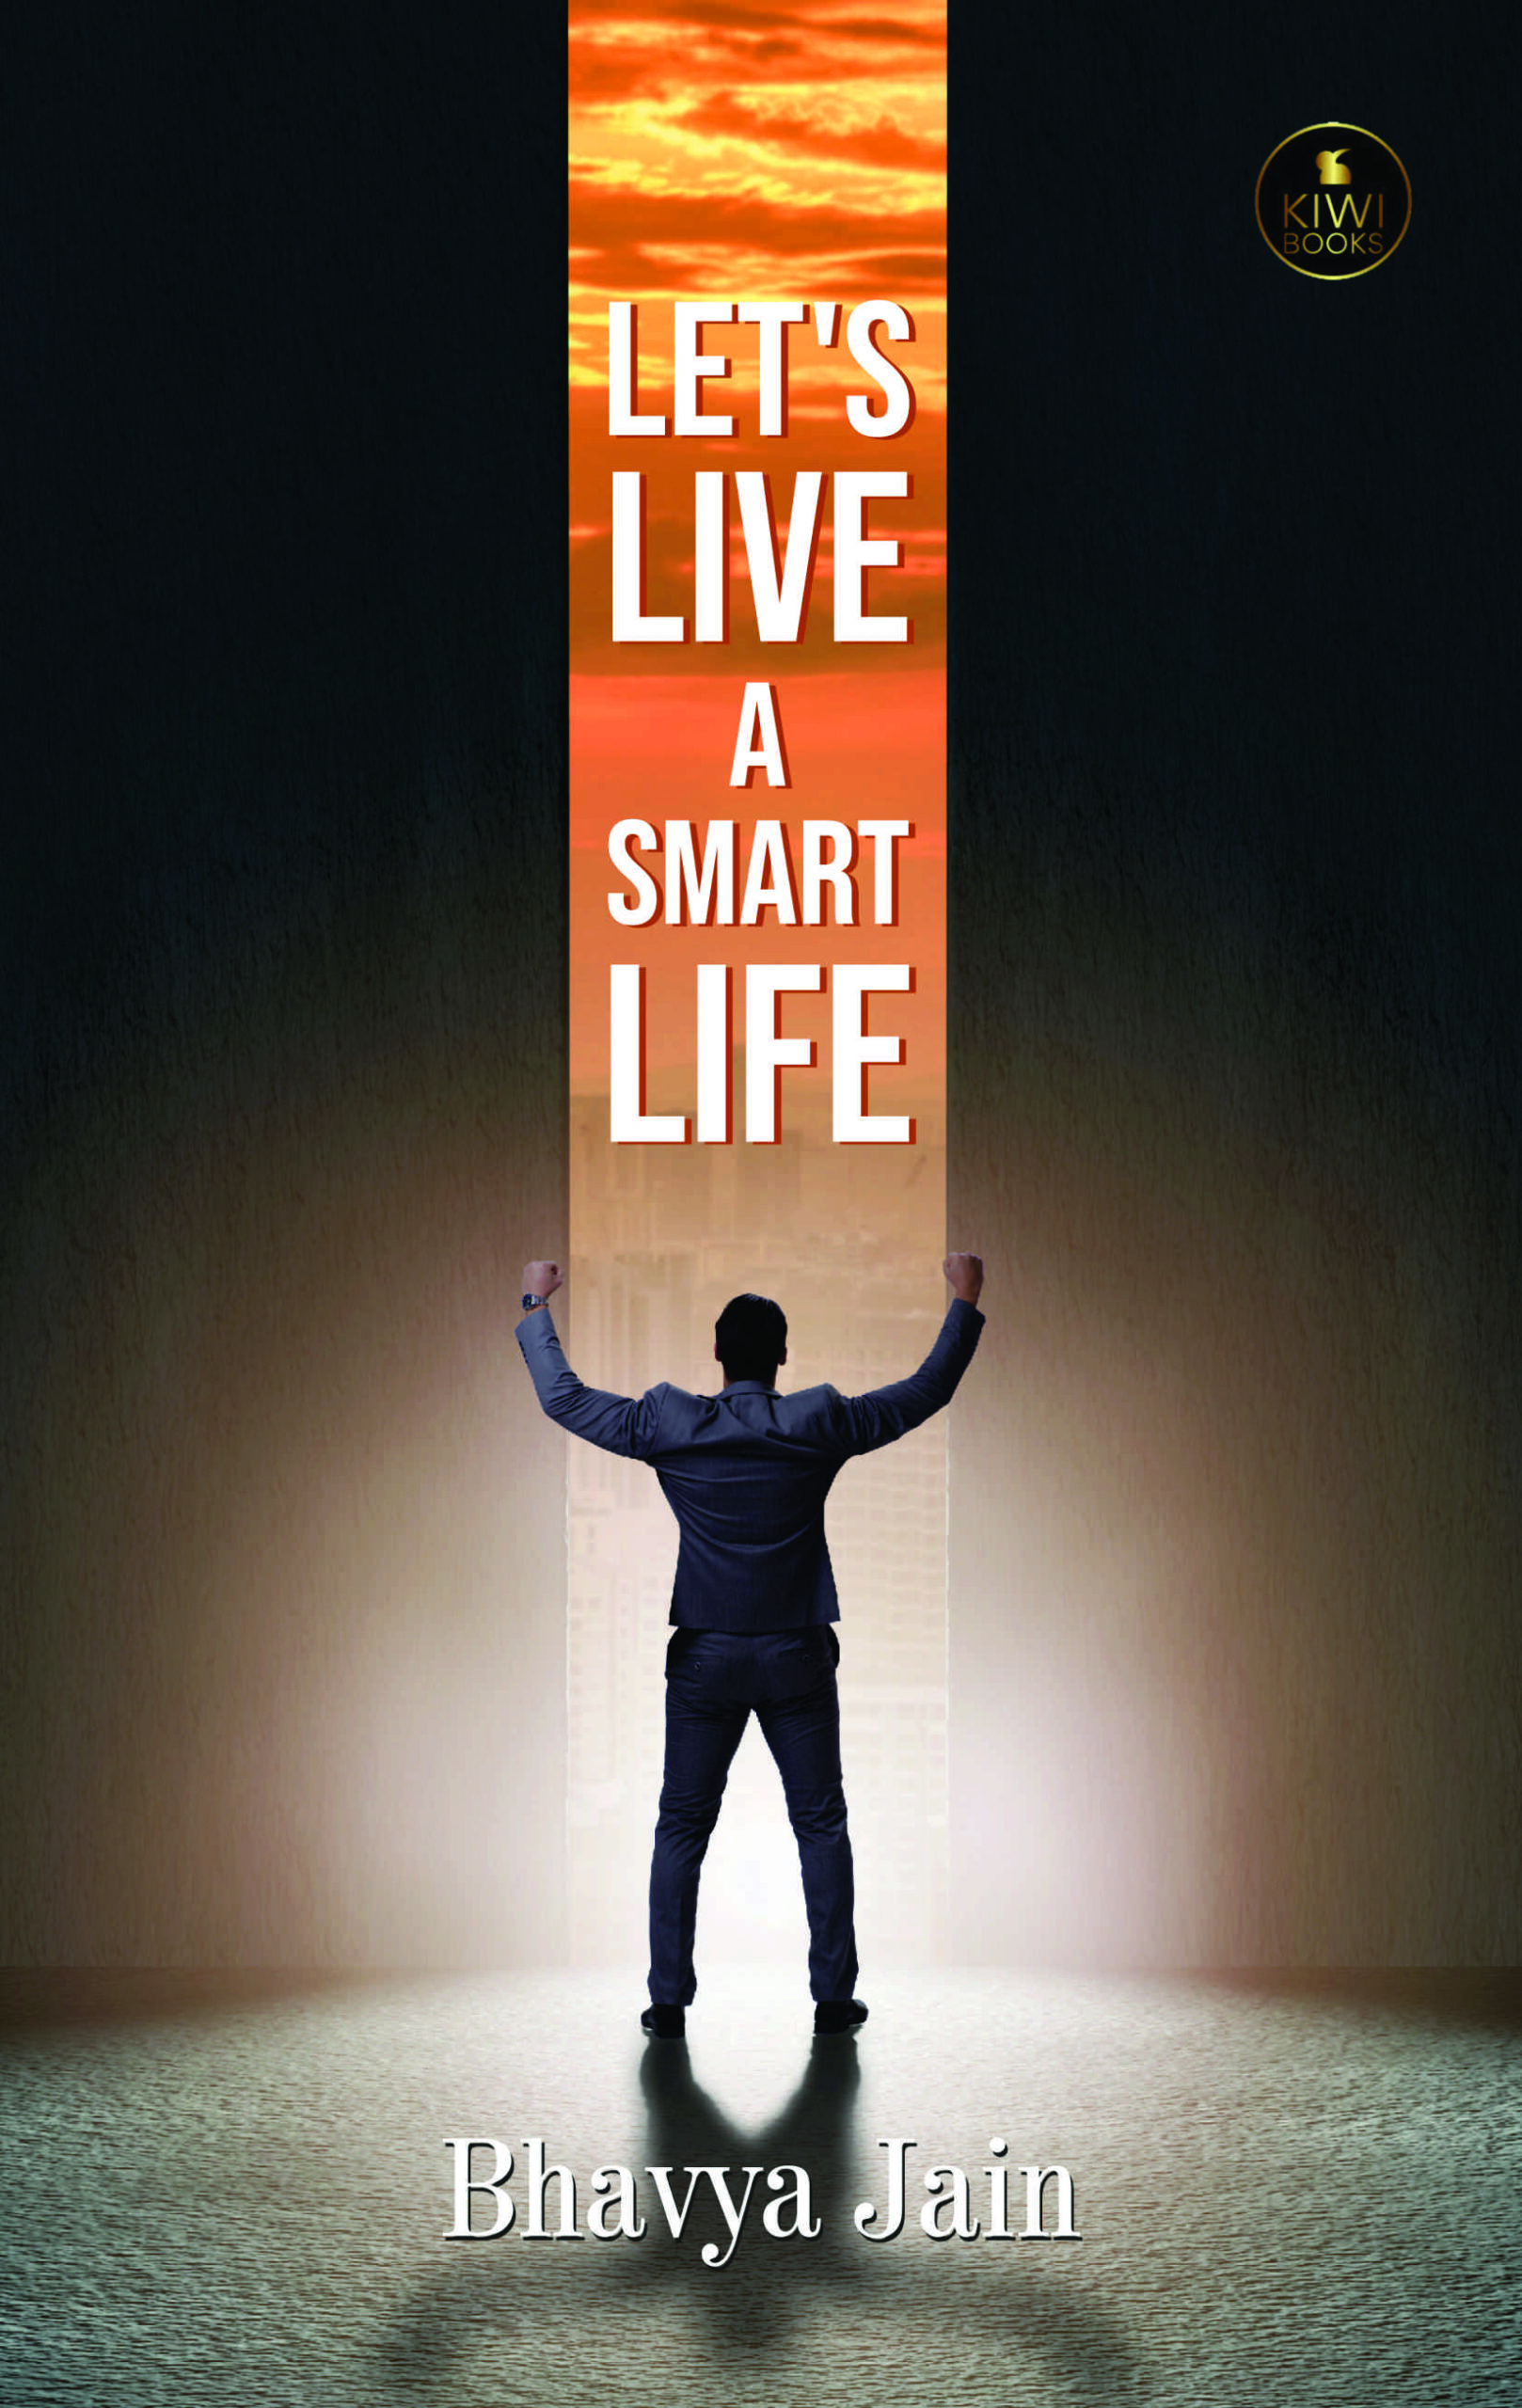 Let’s live a smart life